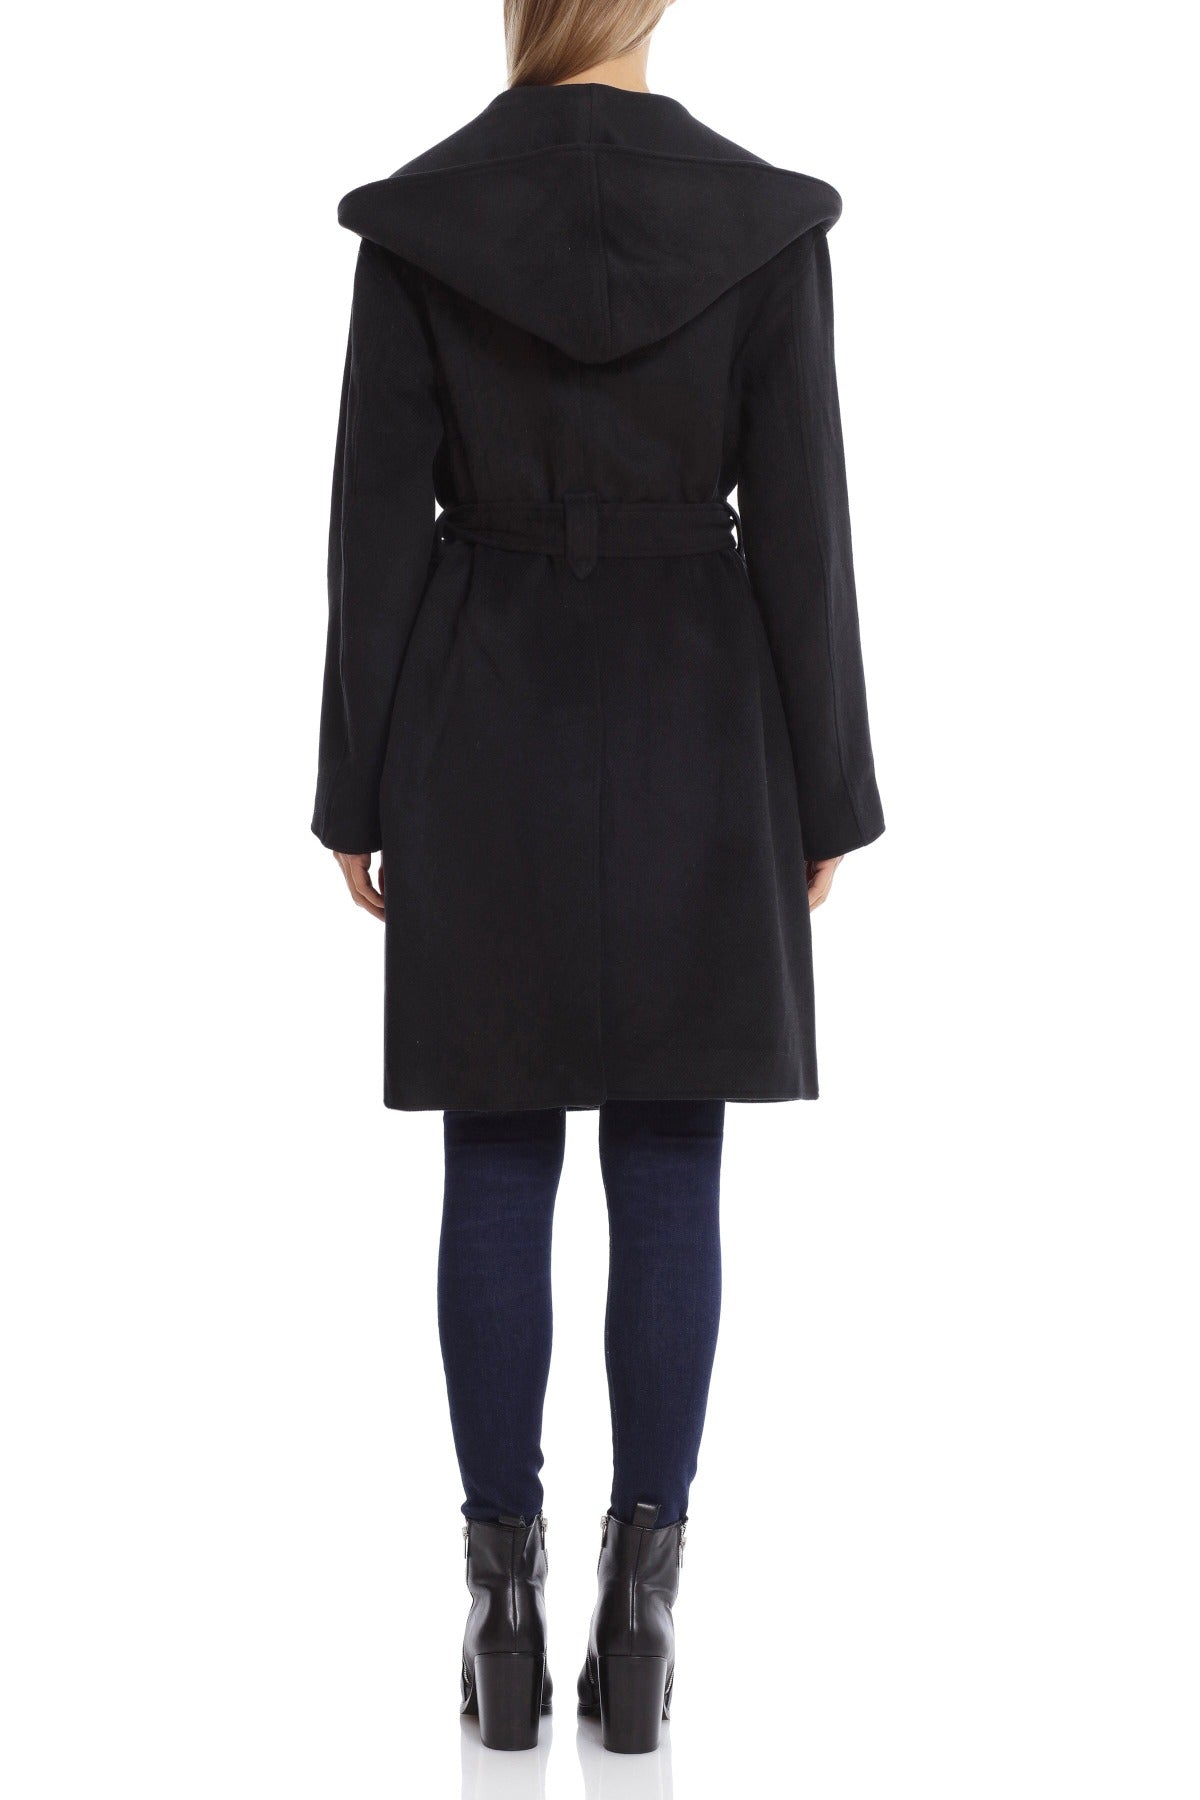 Long Coats - Buy Long Overcoats For Women online at Best Prices in India |  Flipkart.com